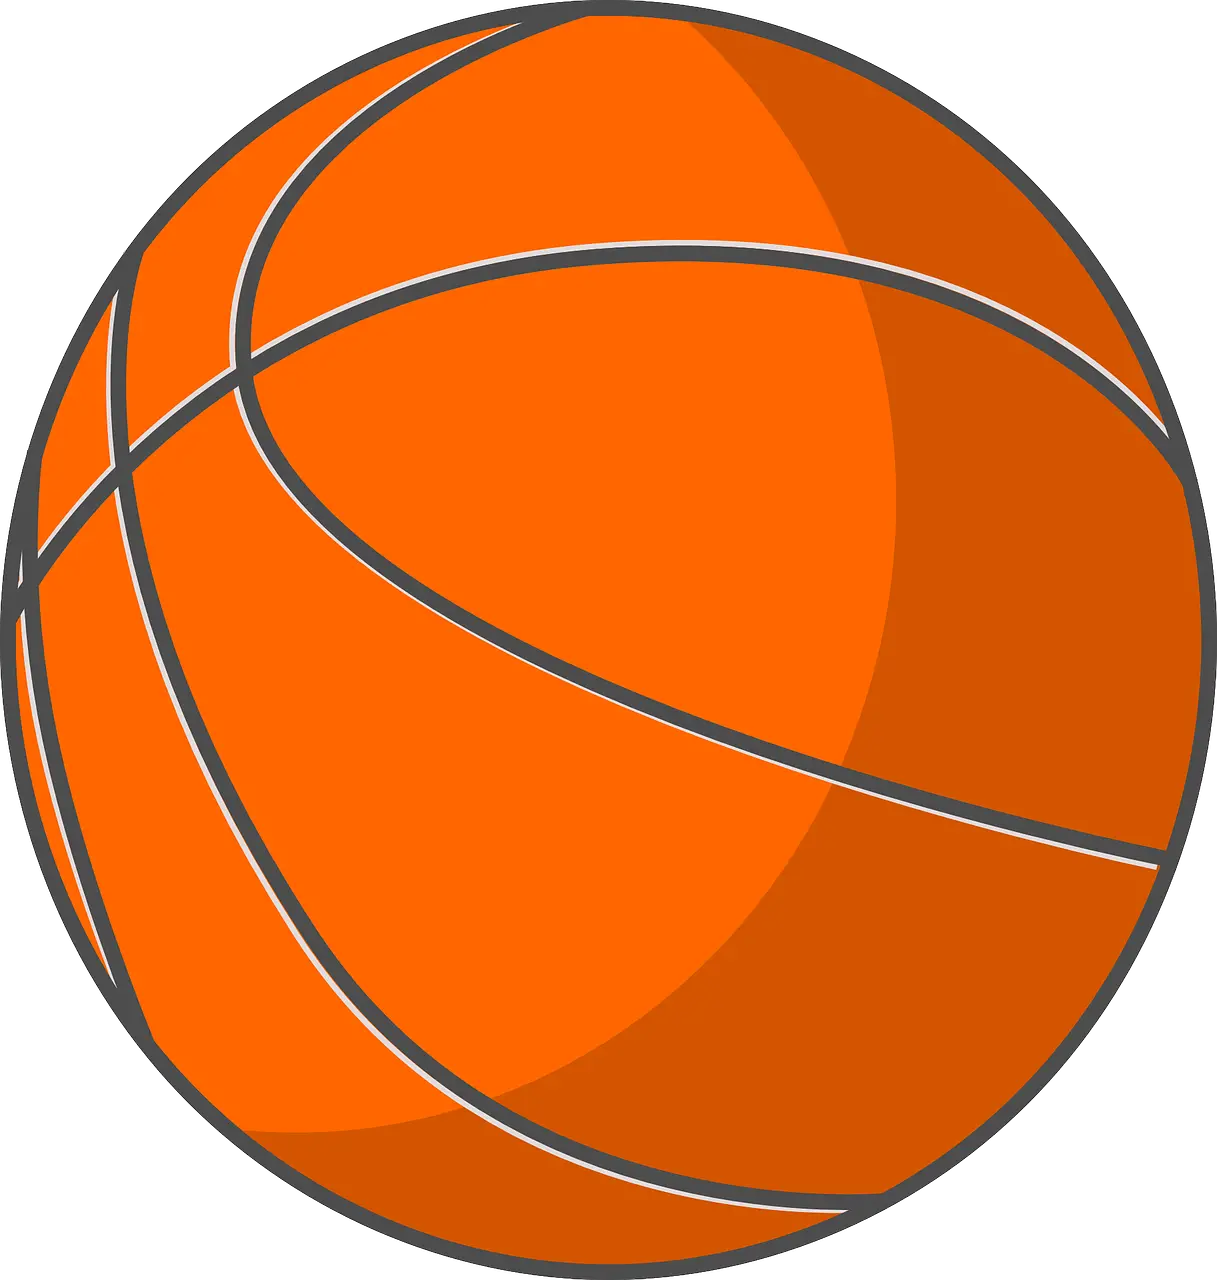 2022 Basketball Png